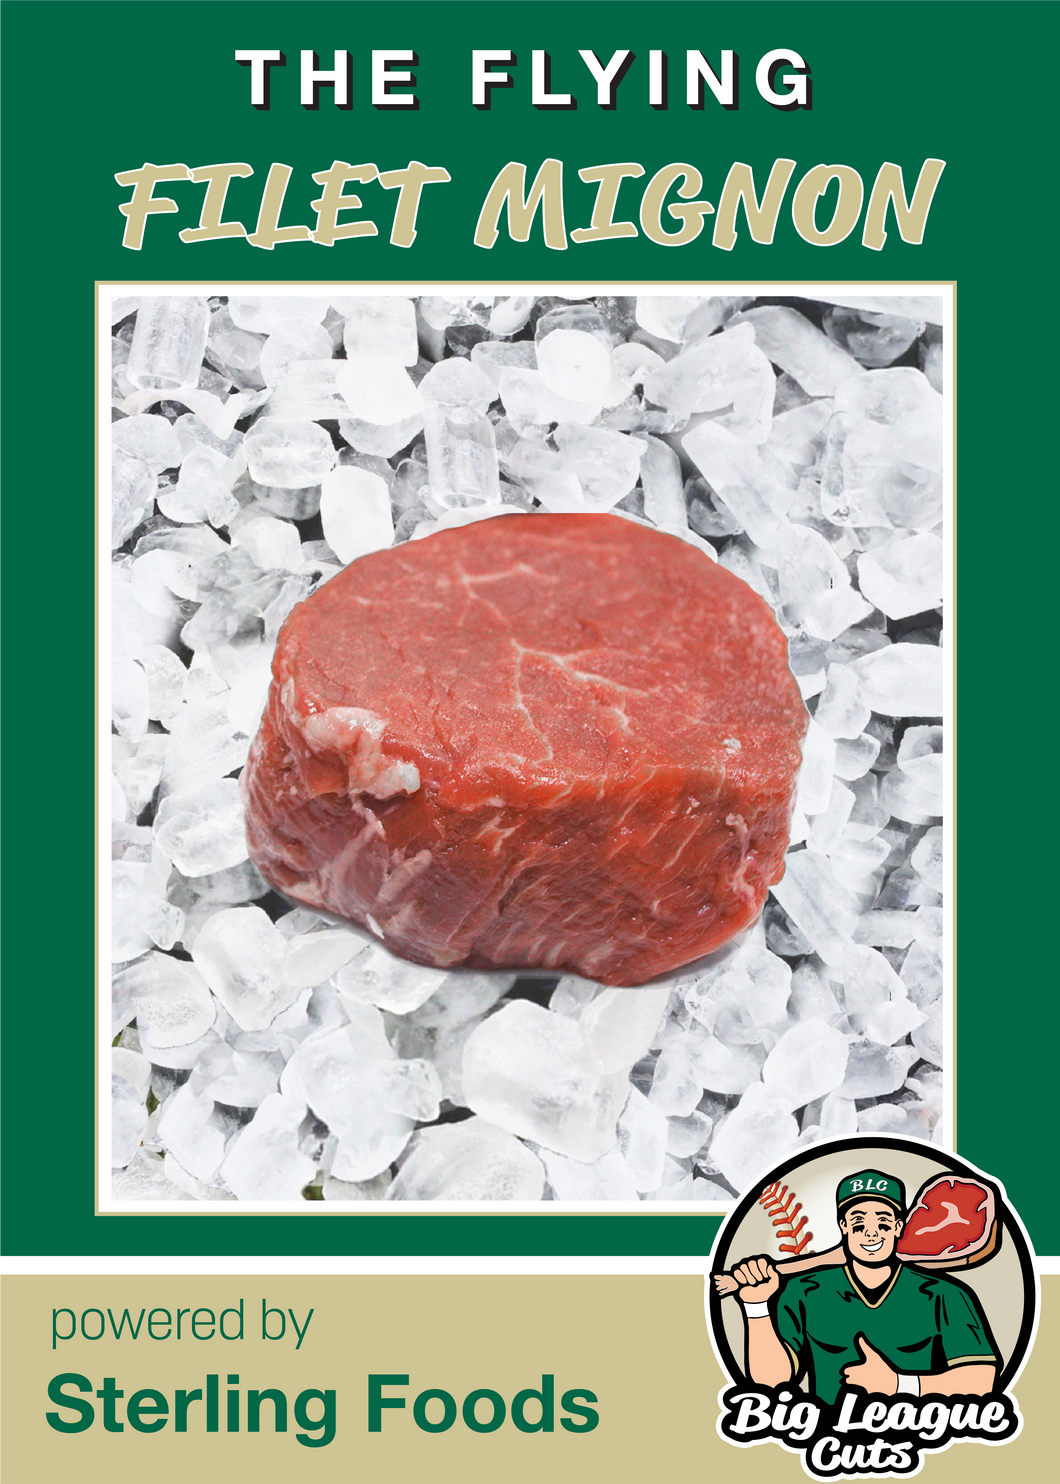 Flying - Filet Mignon Steak (6) 8 oz. steaks